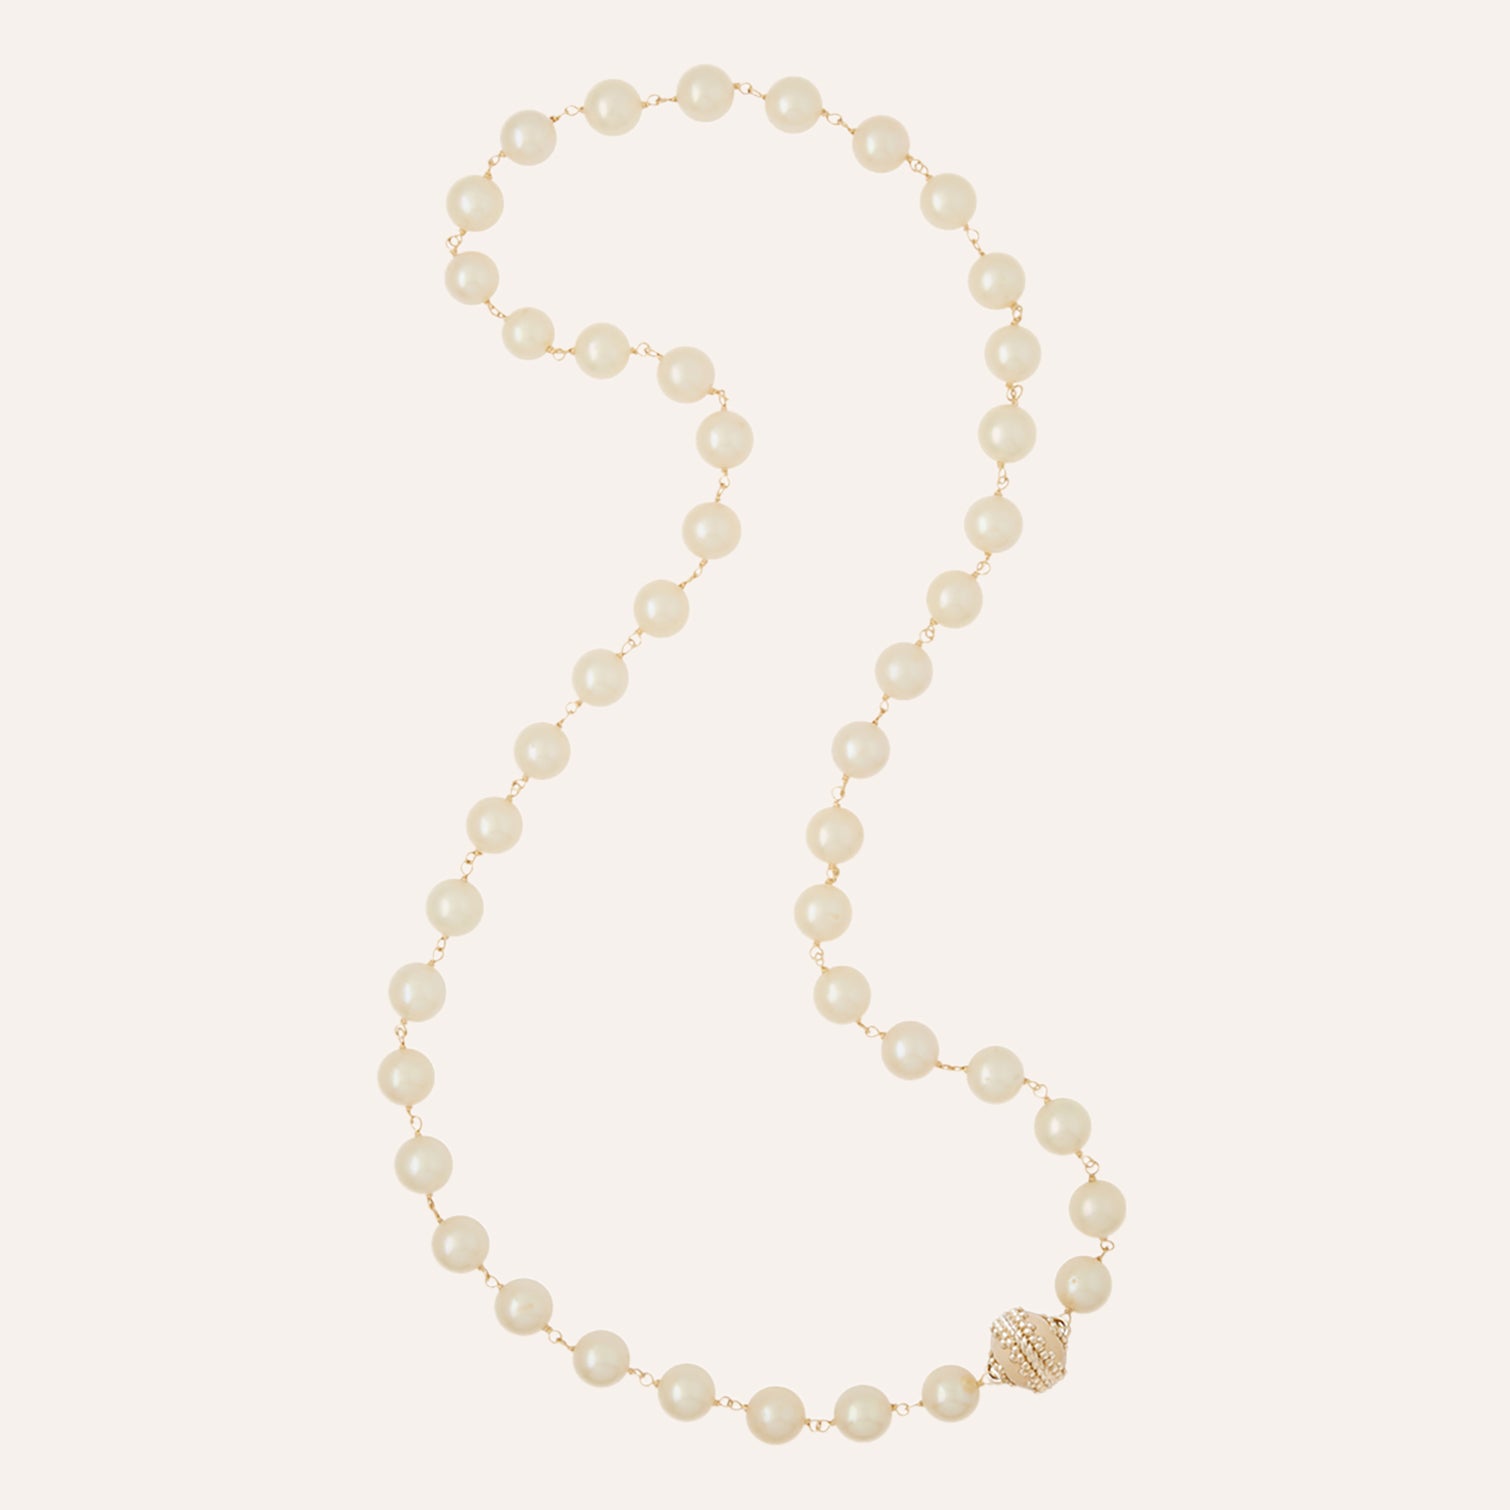 Caspian White Potato Pearl 8.5-9.5mm Necklace